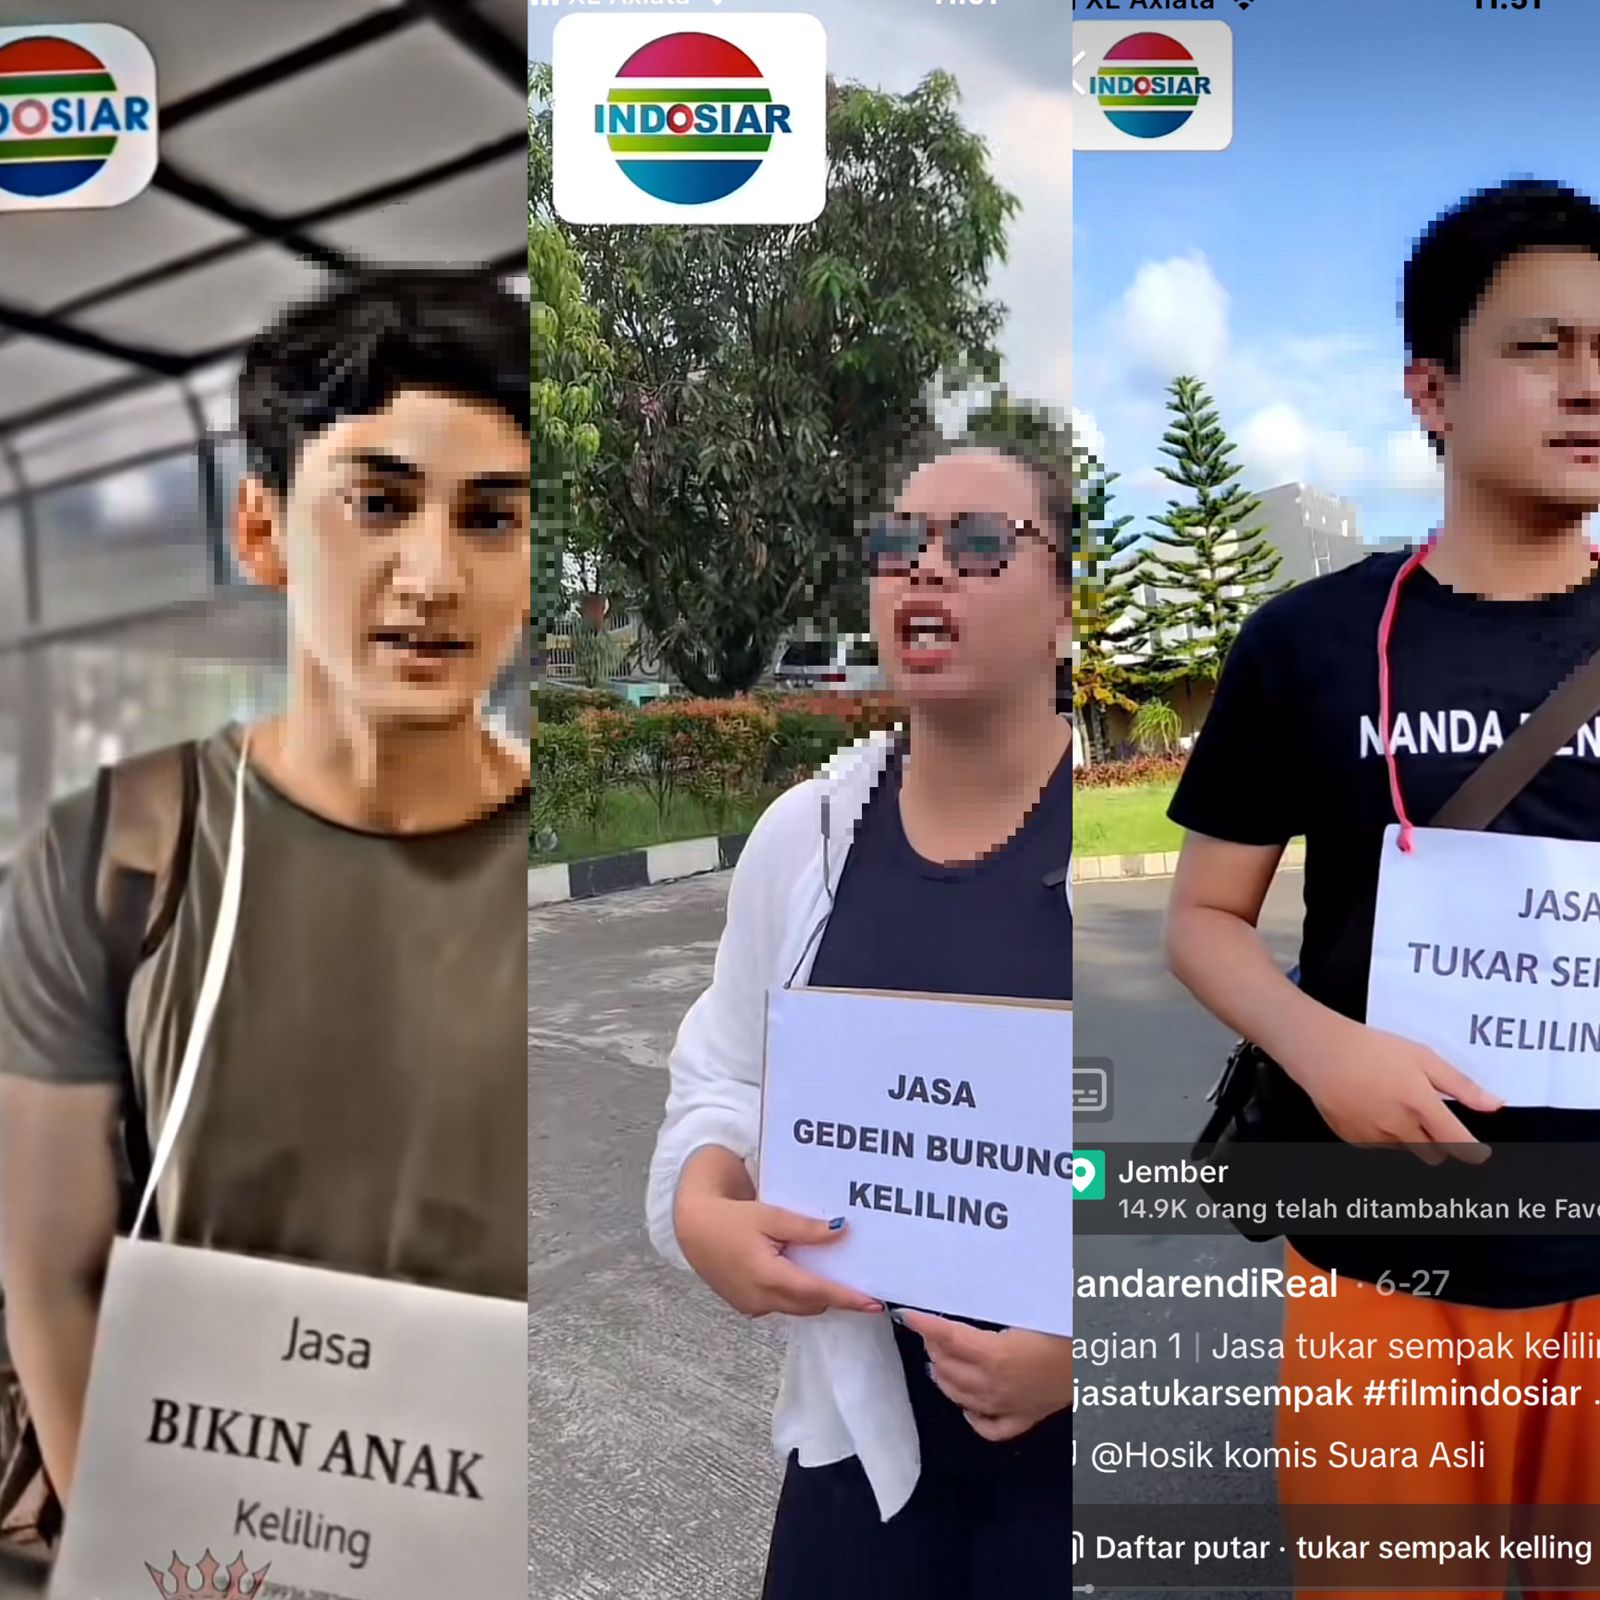 Indosiar Murka Akan Ambil Jalur Hukum Apabila Tanpa Izin dan Penyalahgunaan Logo